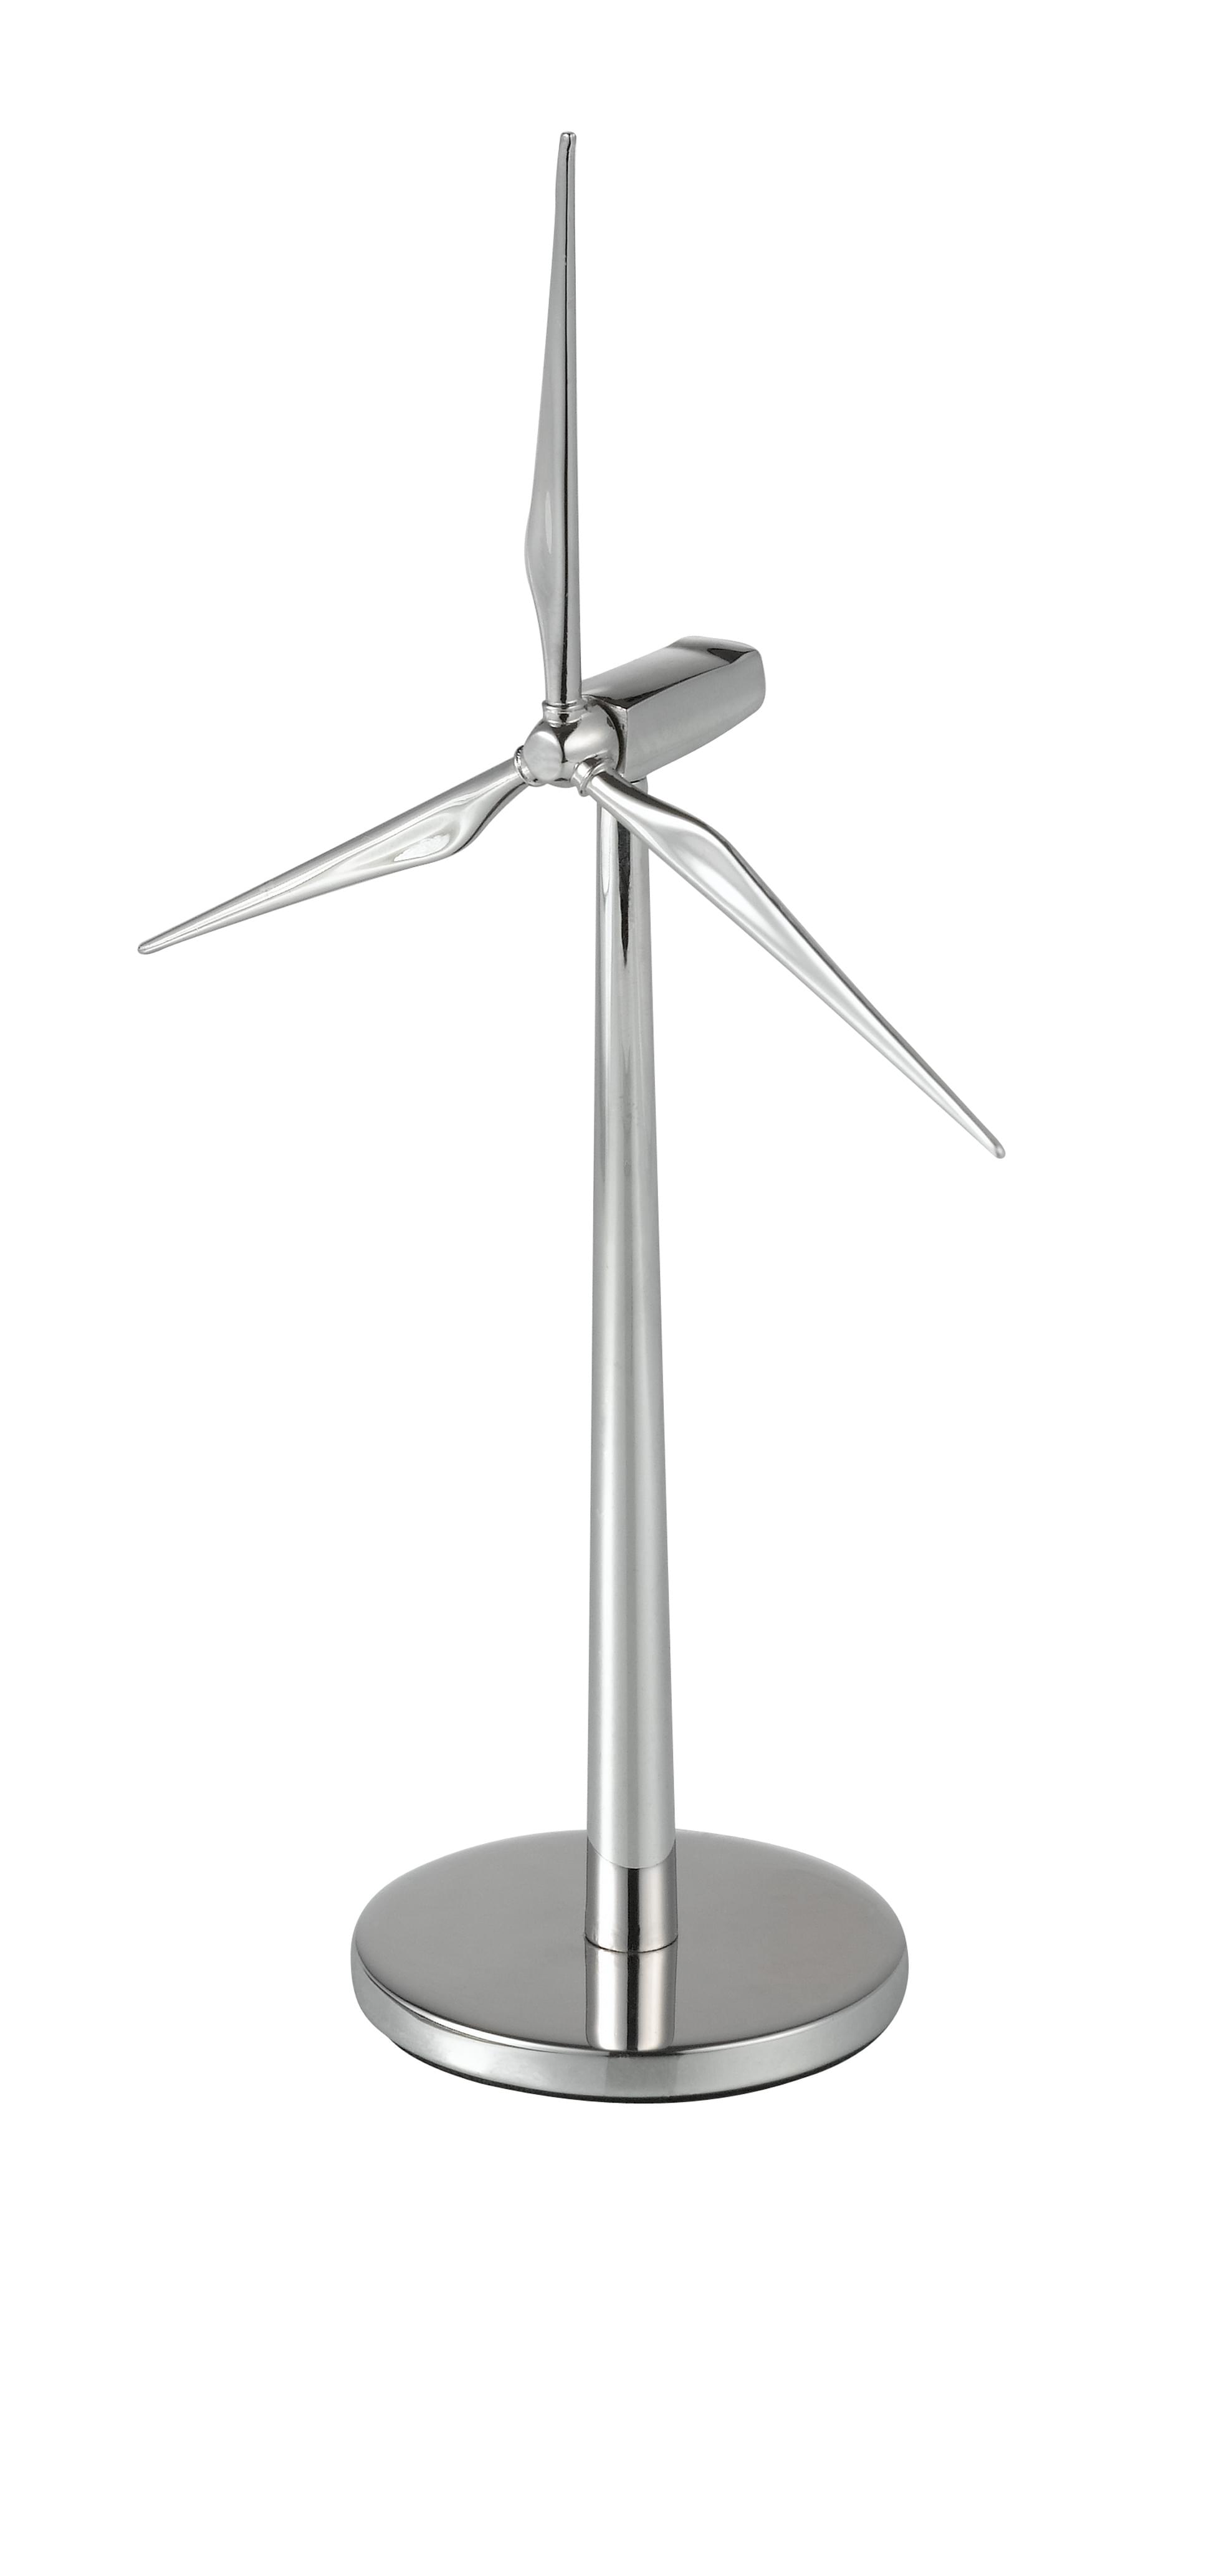 风机模型